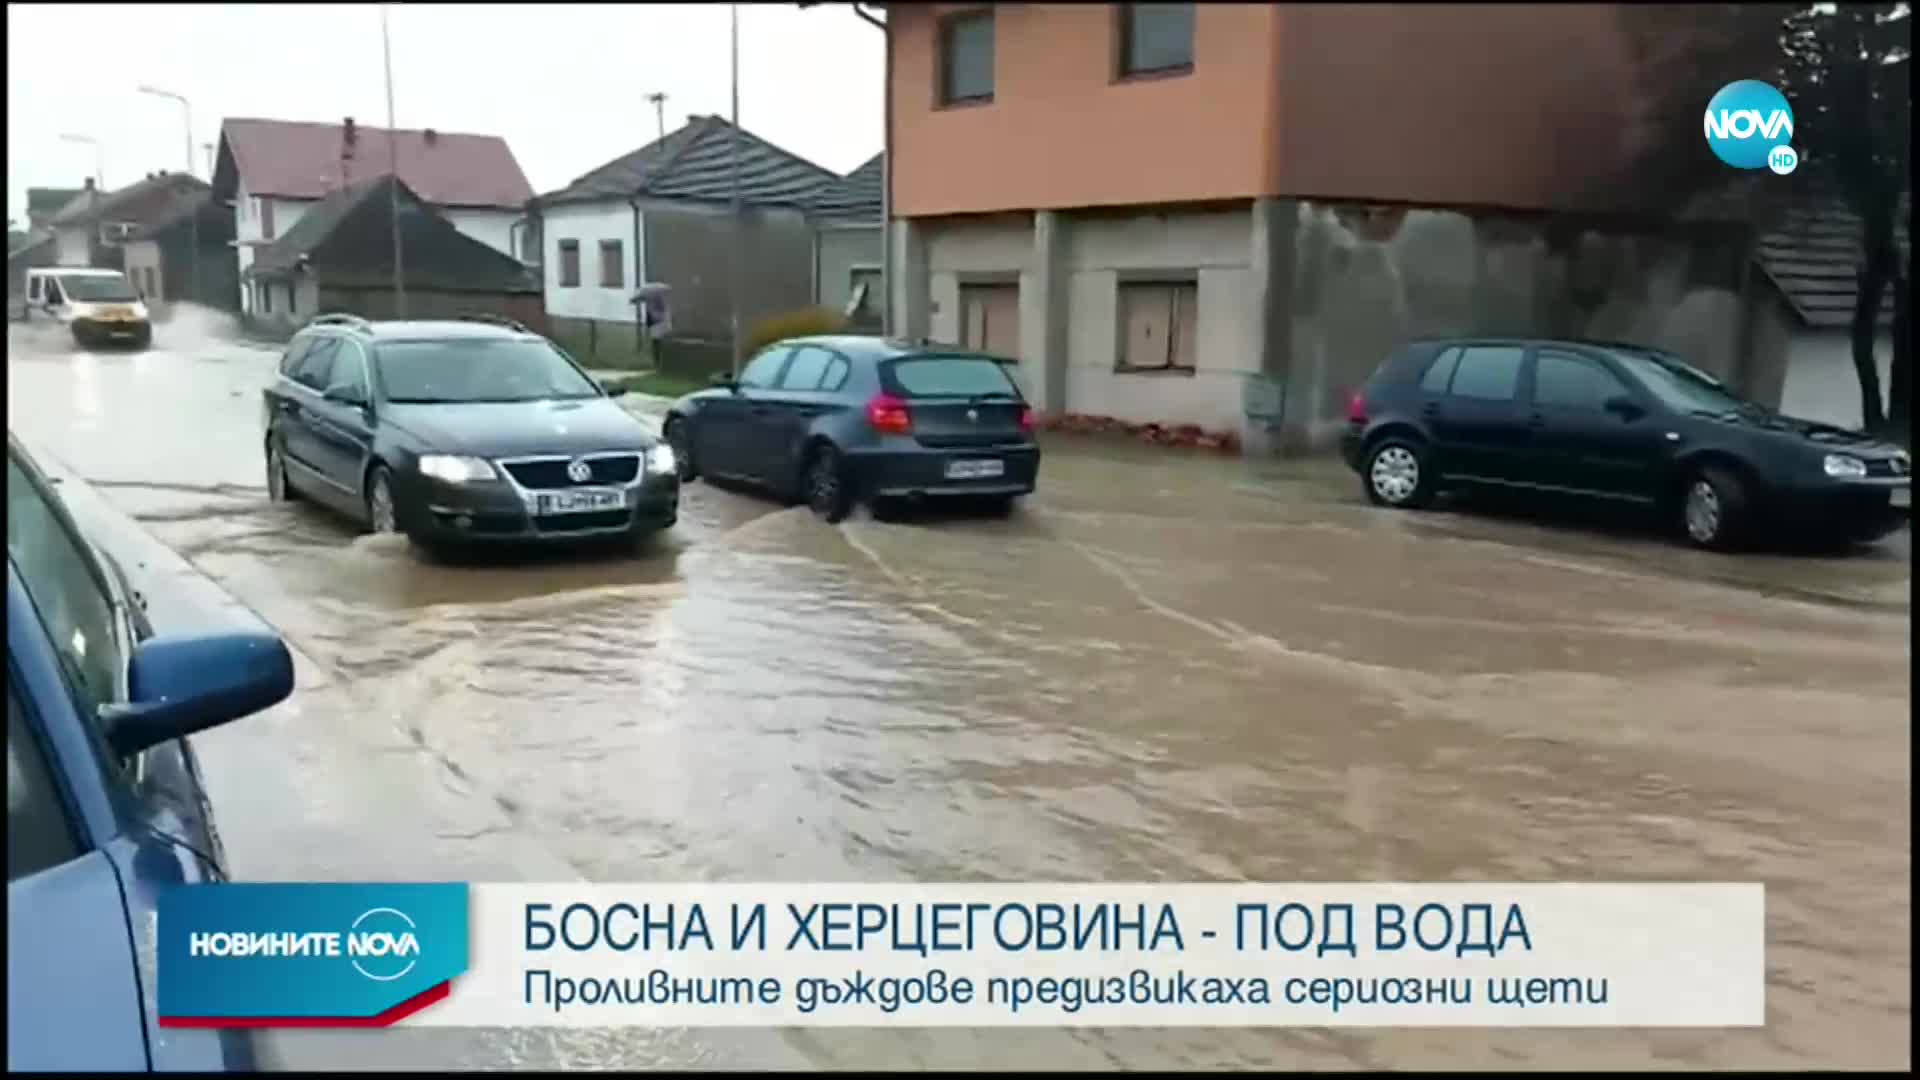 Наводнения в Босна и Херцеговина и Хърватия, подготвя се евакуация